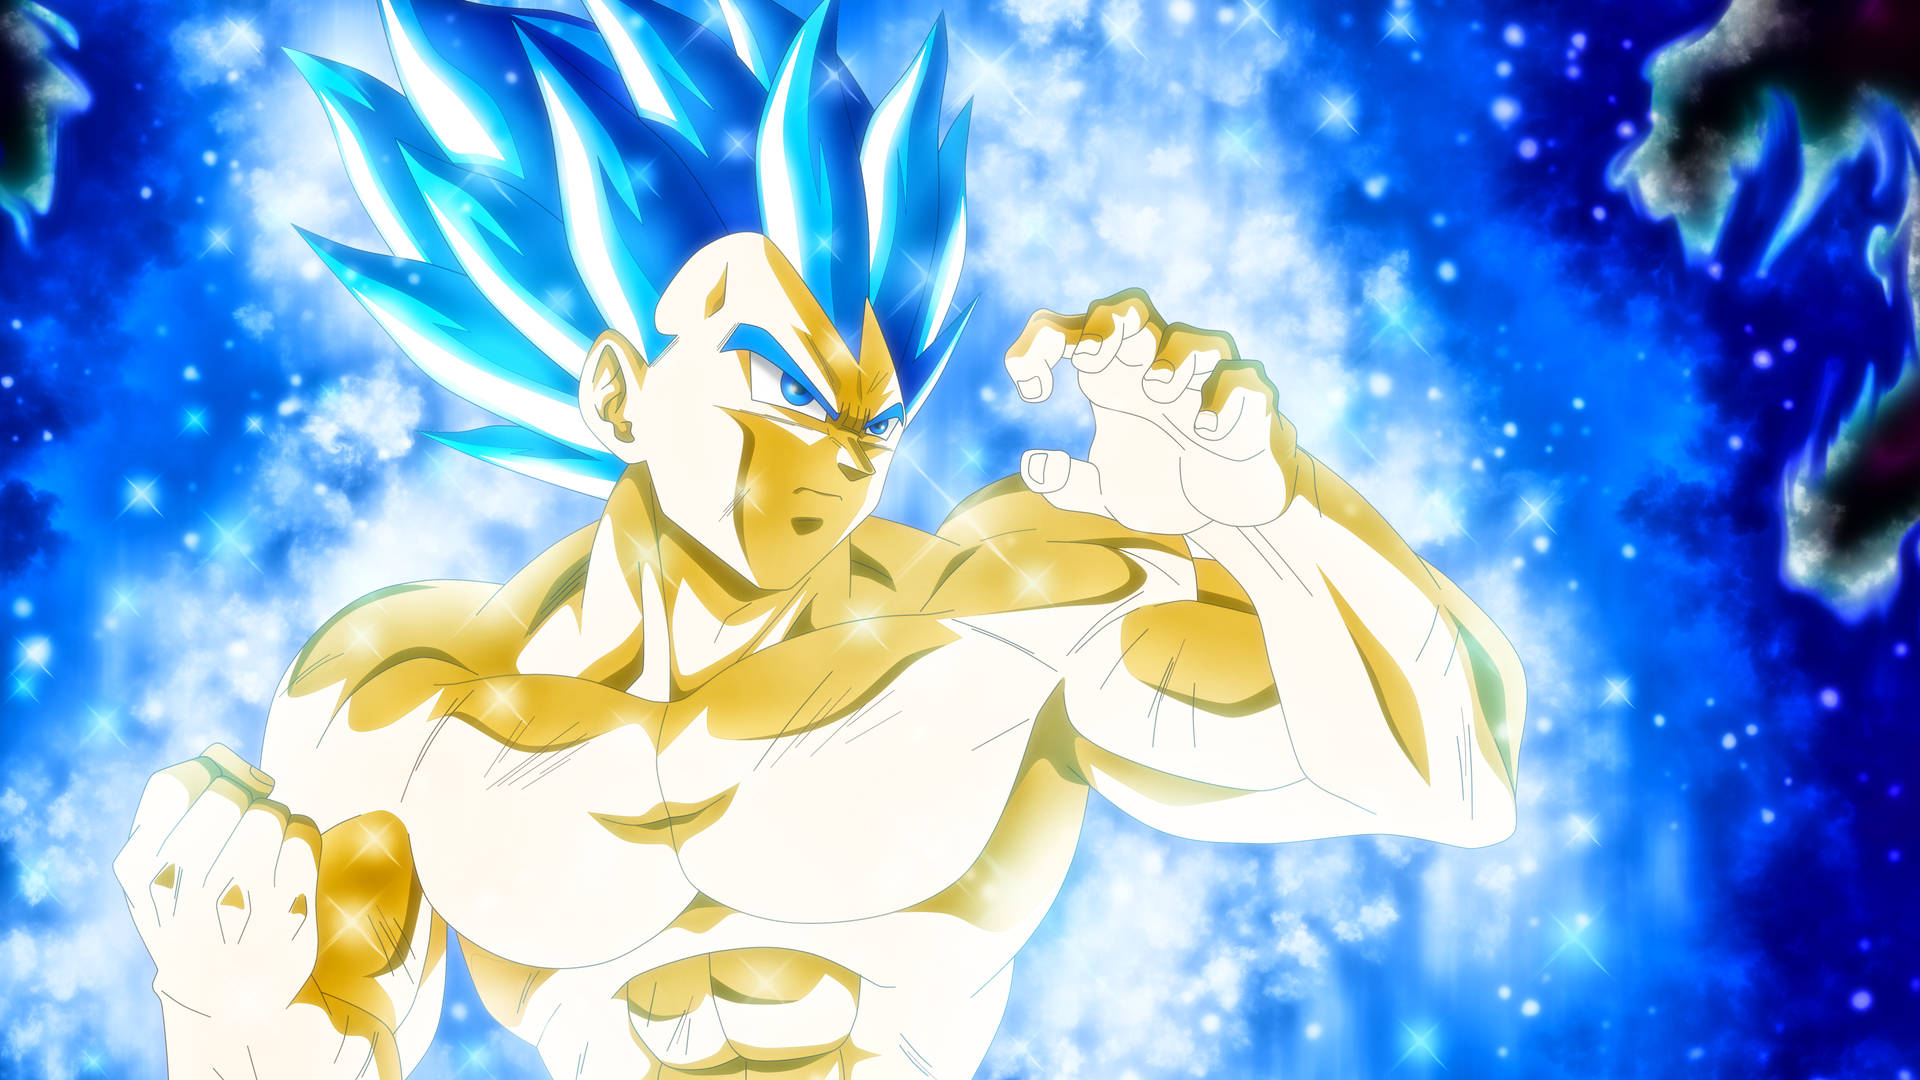 Goku Super Saiyan Blue Shirtless Background